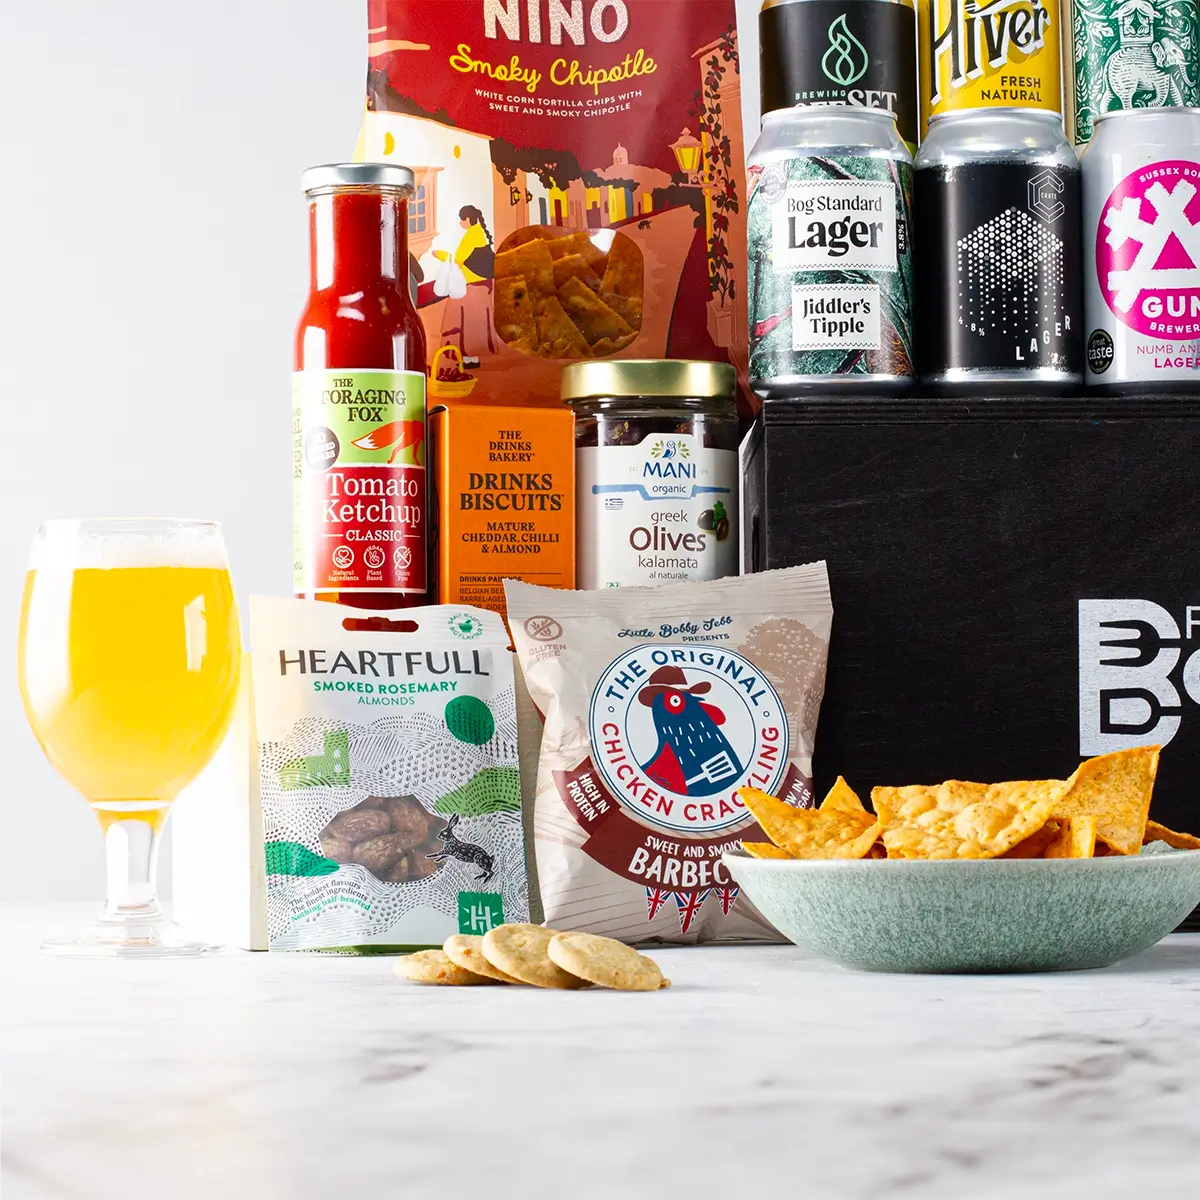 Ultimate Craft Beer Hamper in Luxury Pine Box